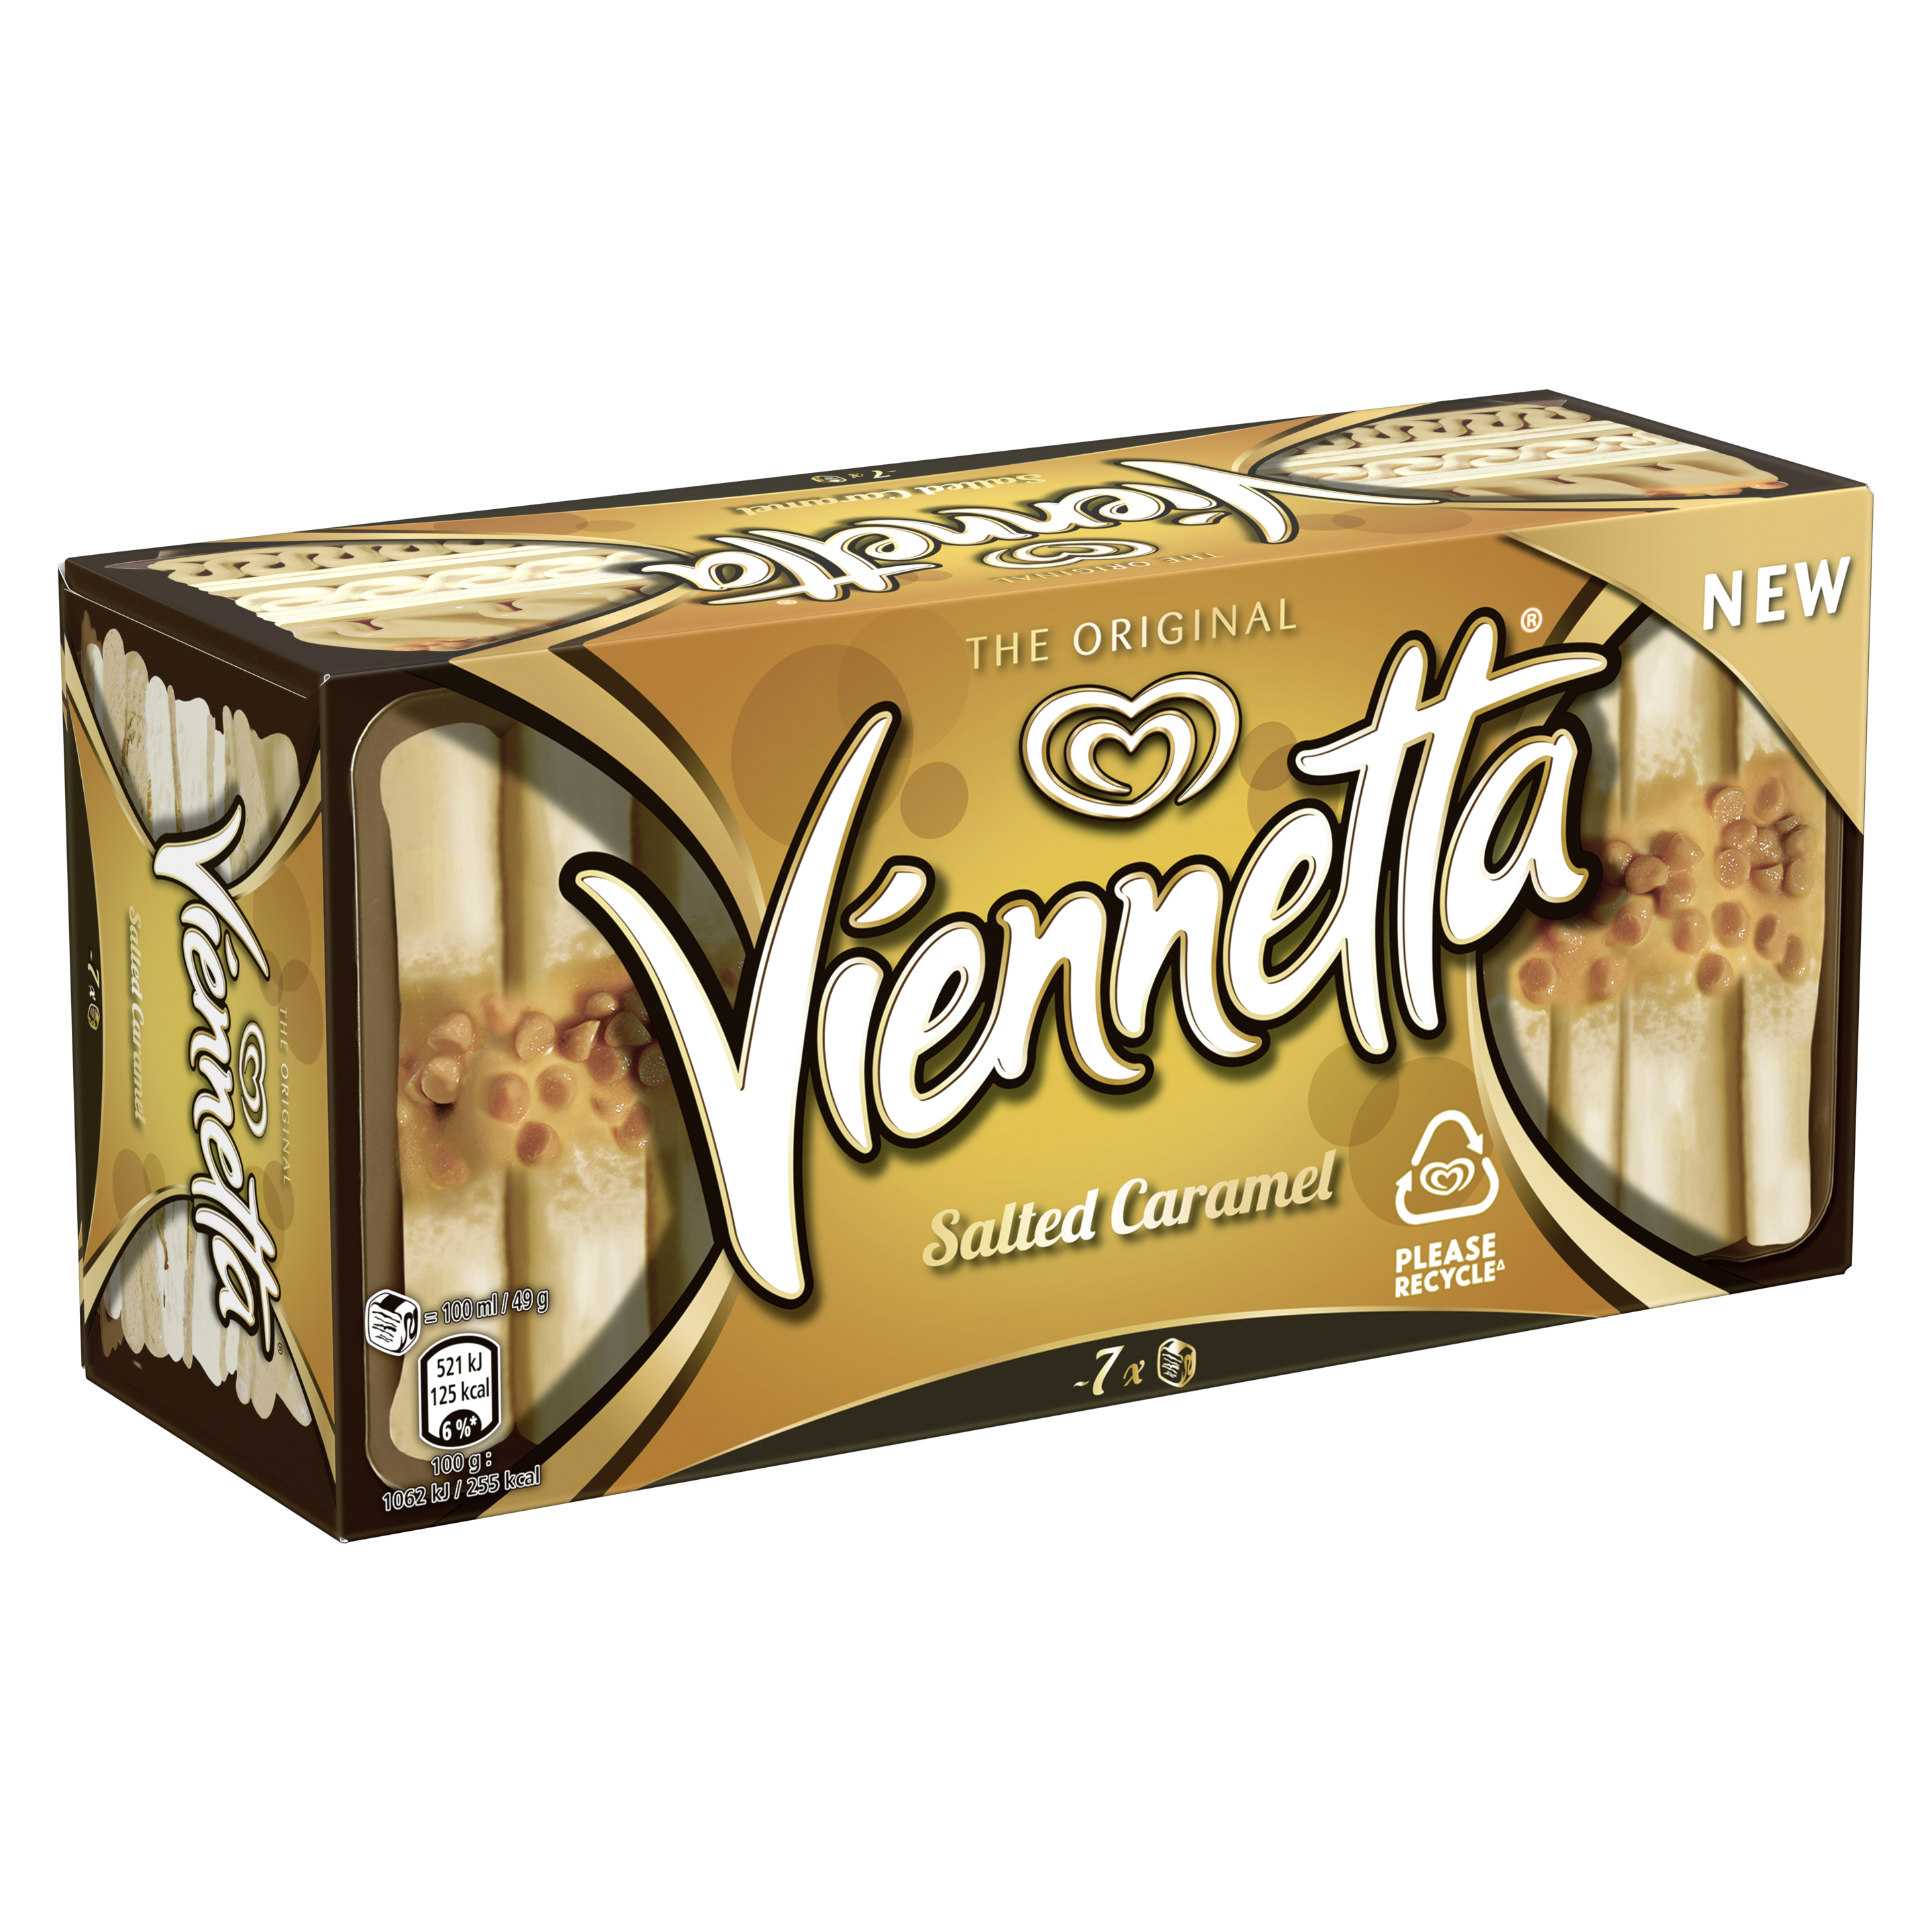 Viennetta Salted Caramel 650ml